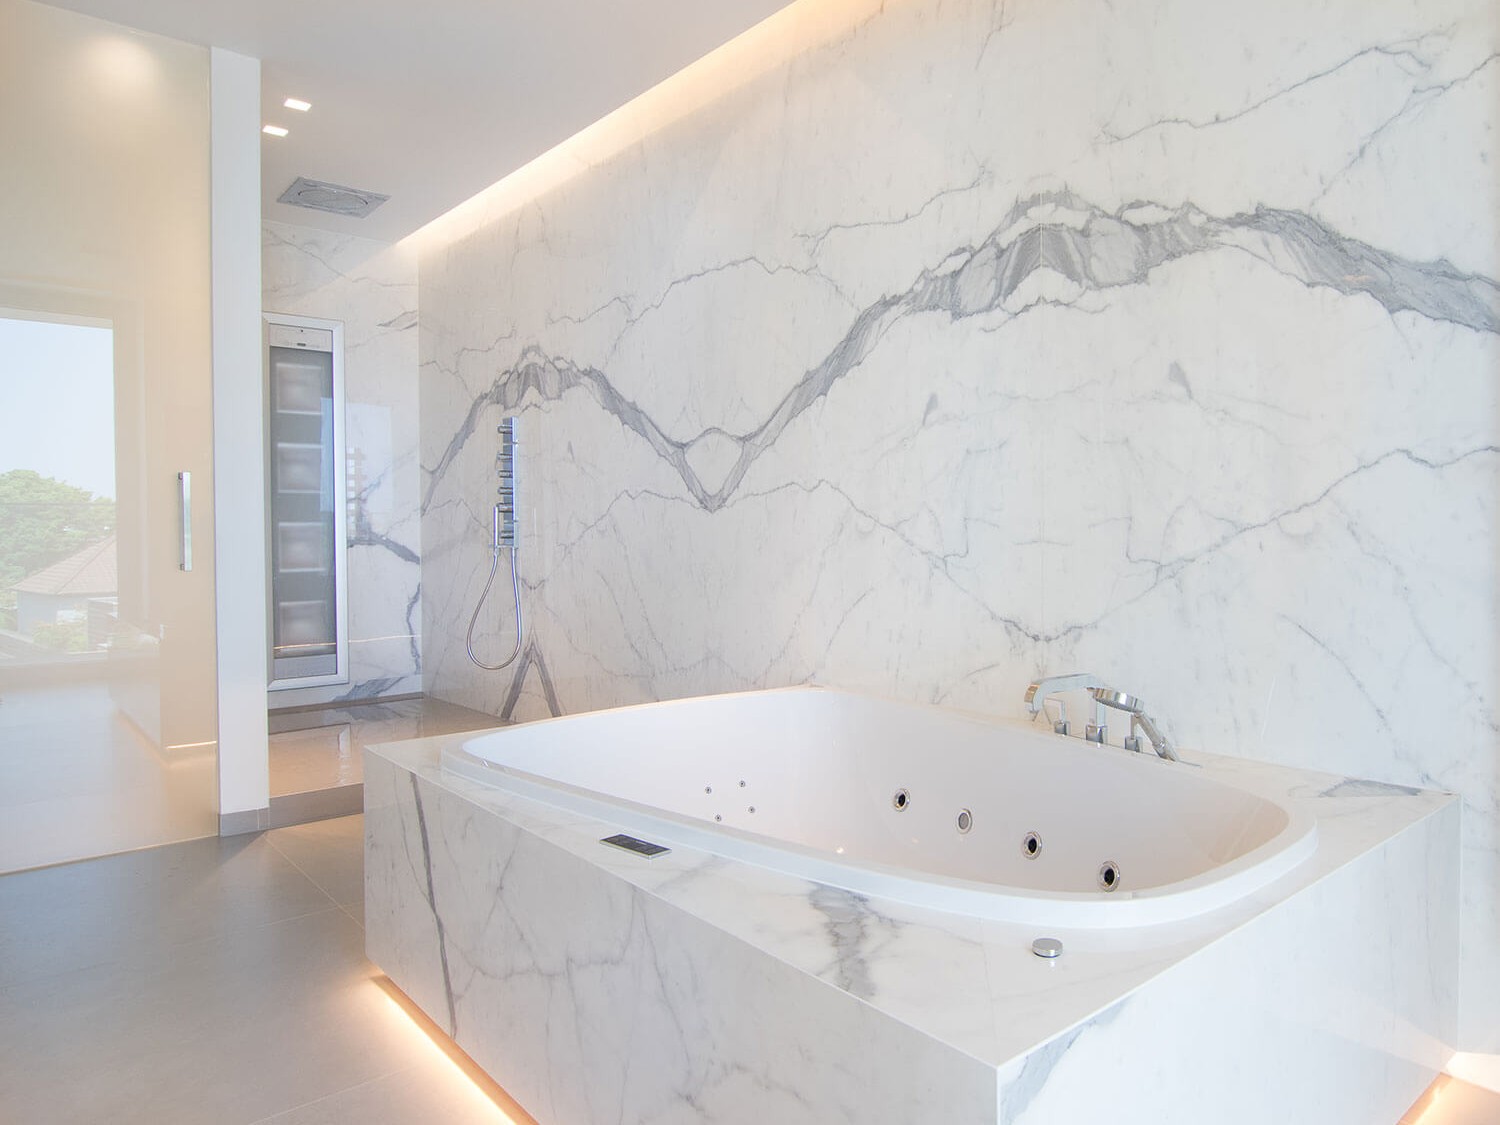 foto van bad en douche in moderne badkamer met keramische tegels die de indruk van marmer geven